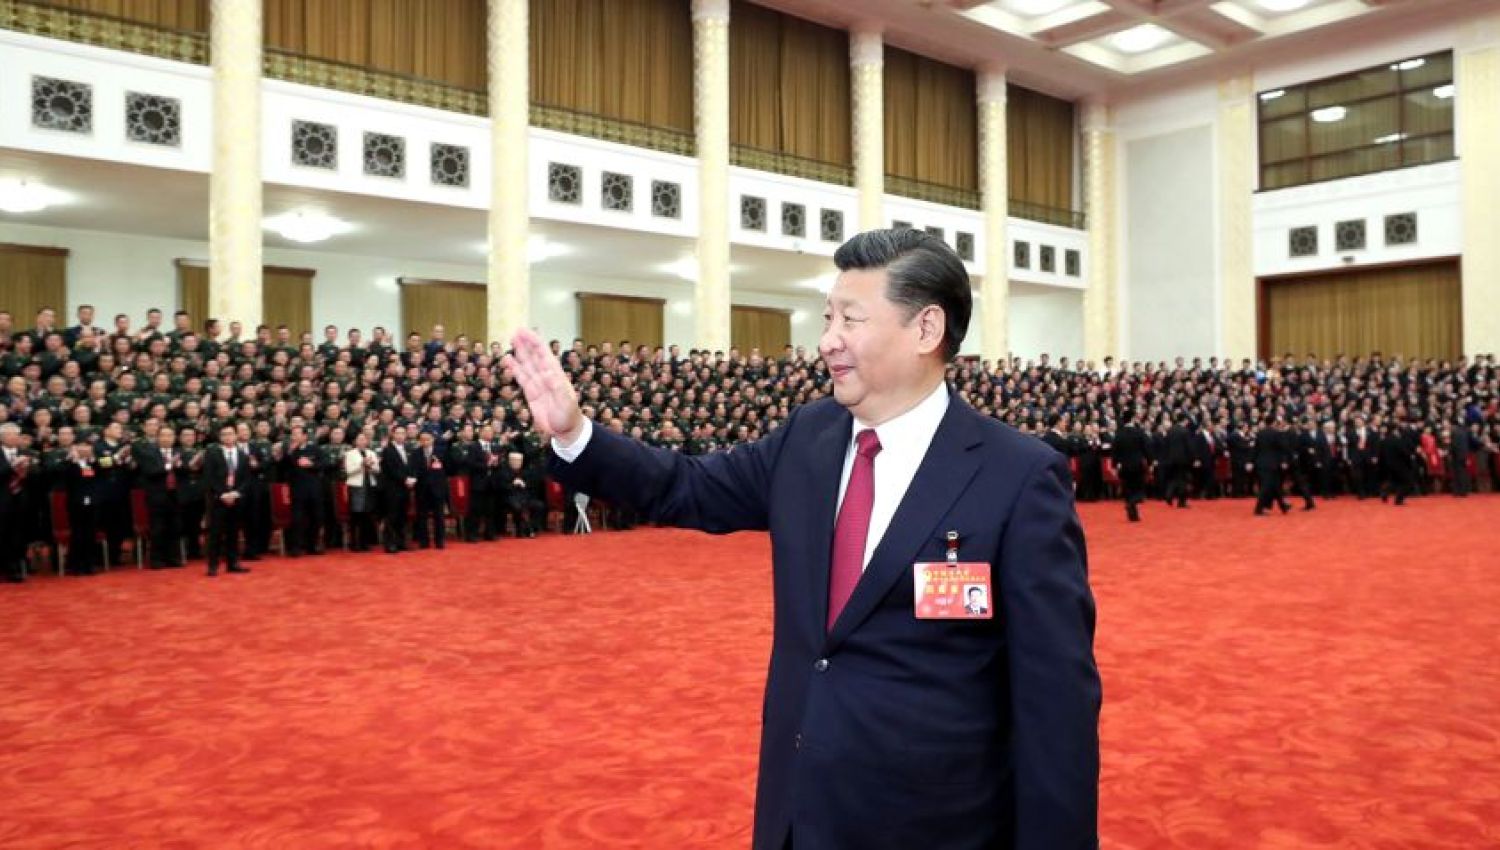 مؤتمر الحزب الشيوعي الصيني الـ 20 واللحظة الحرجة